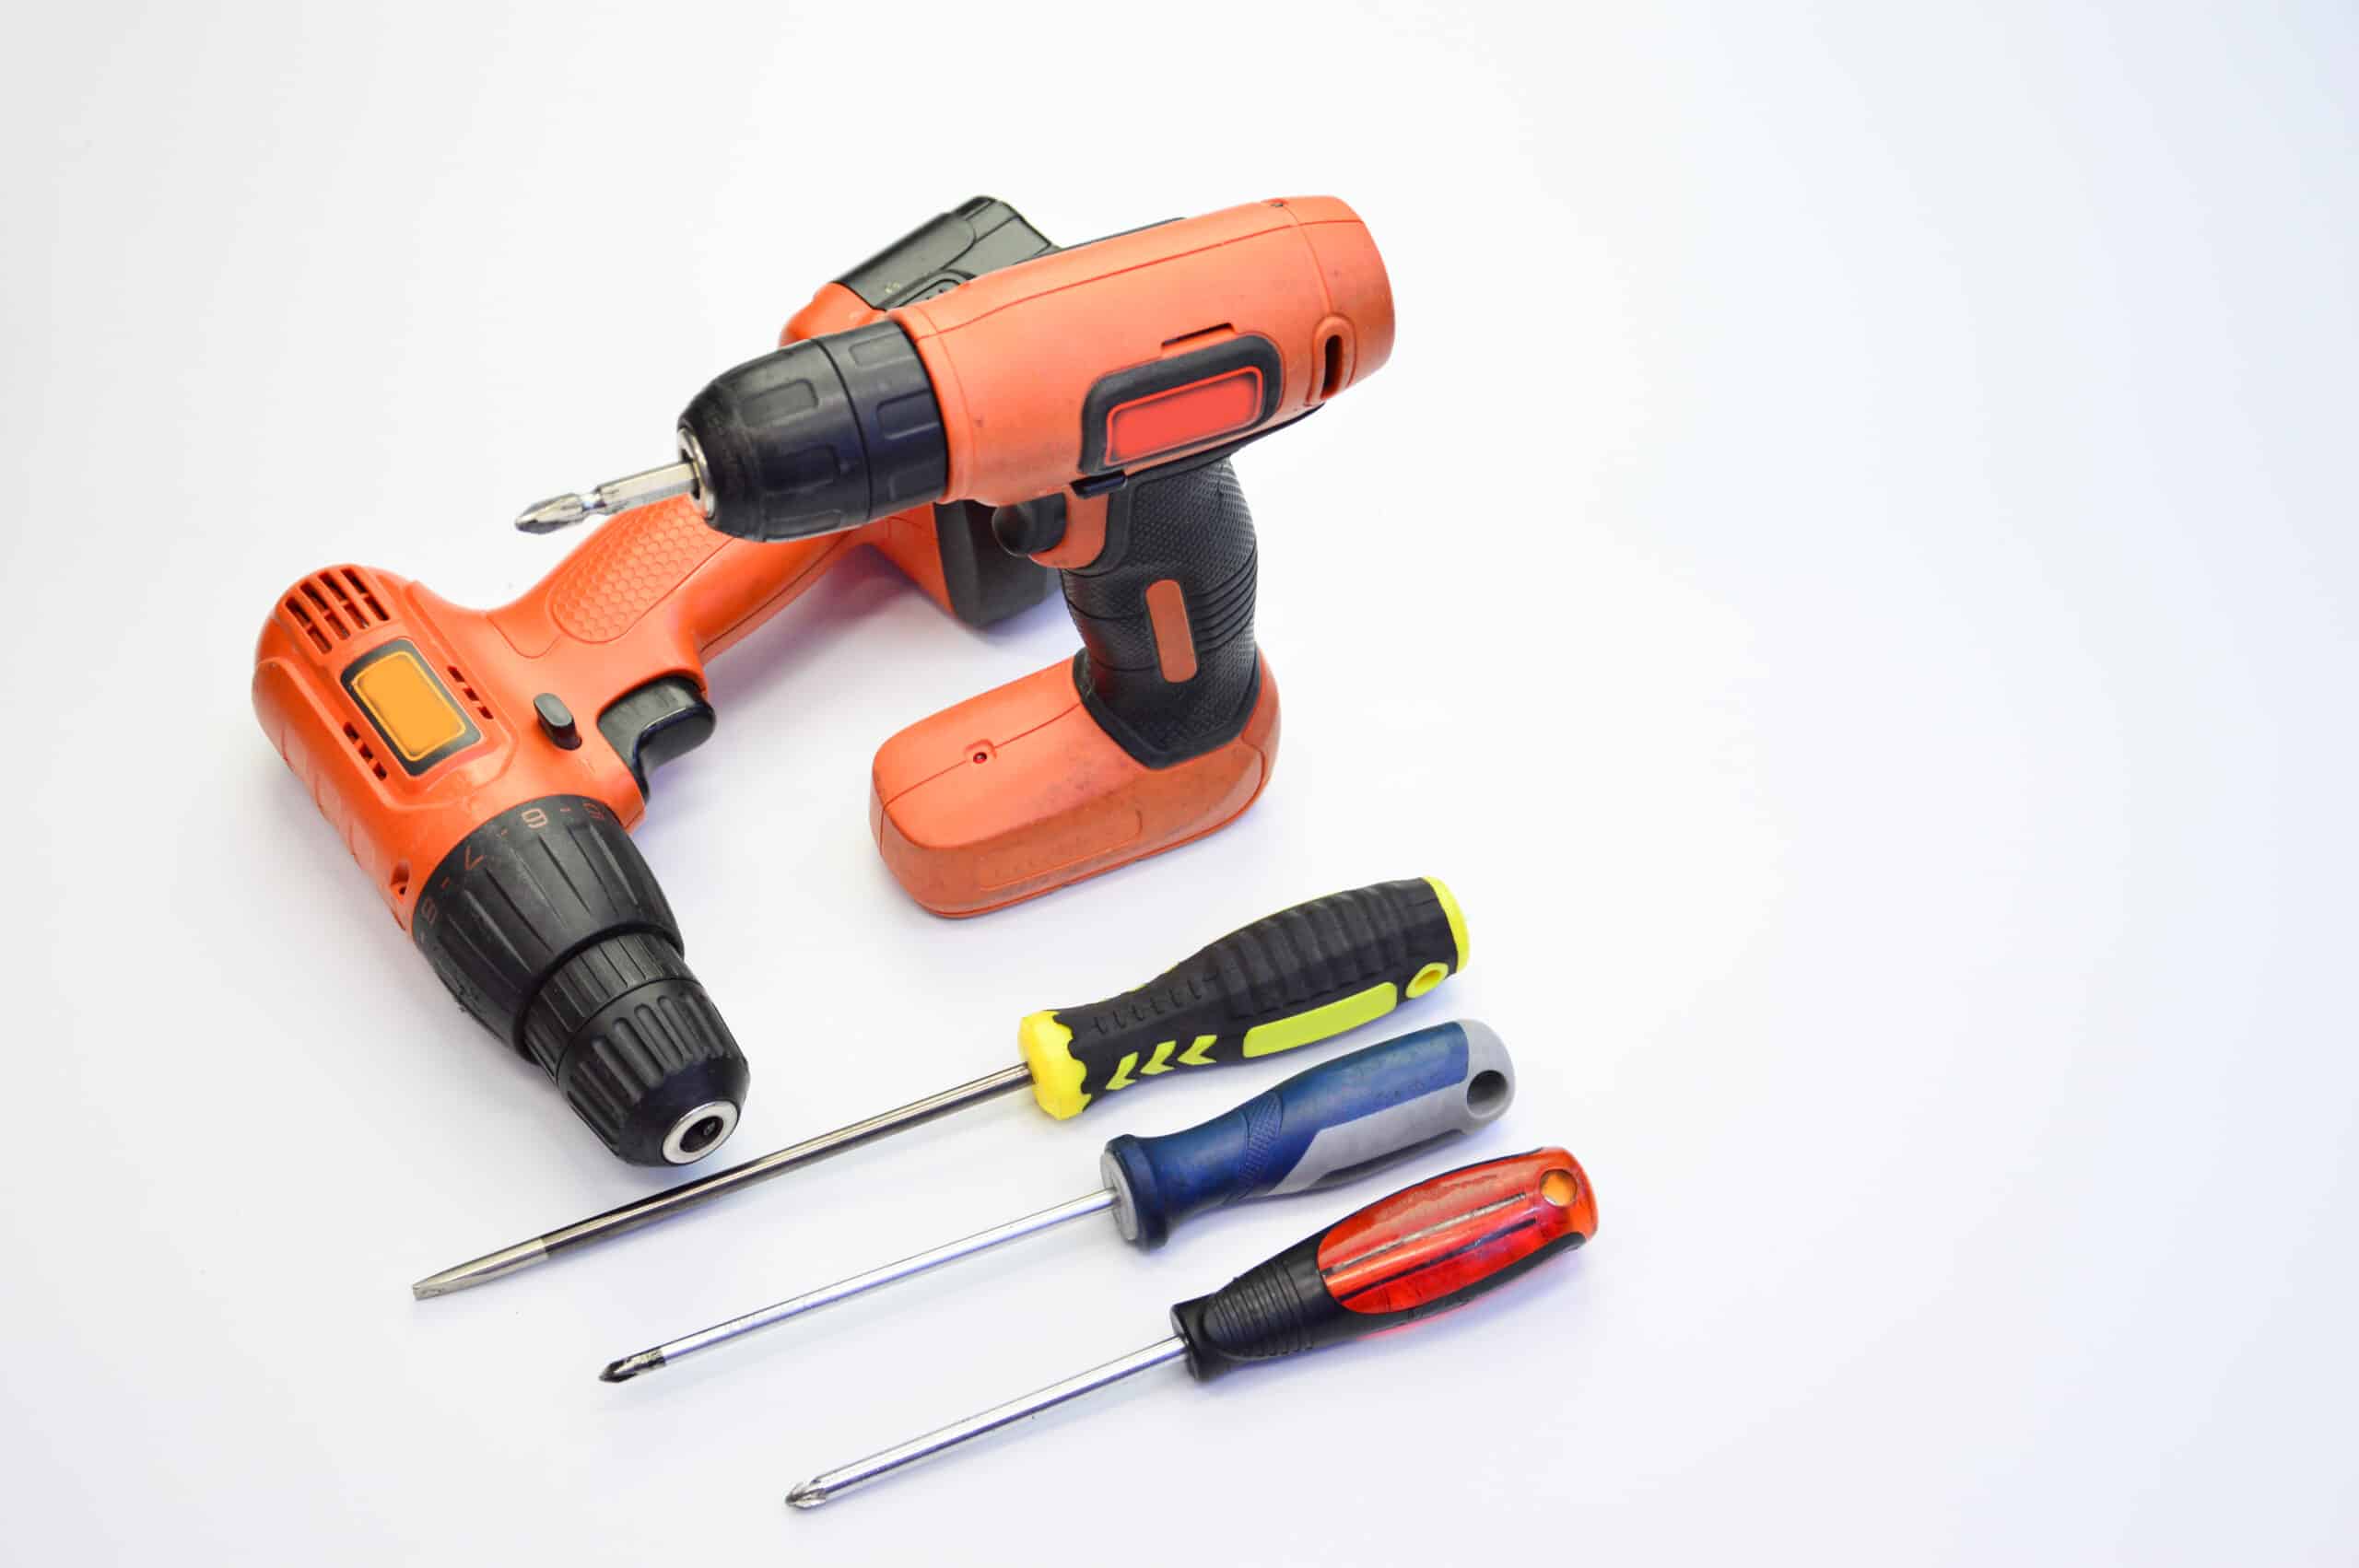 theprecisiontools.com : How do you select the right screwdriver for a job?